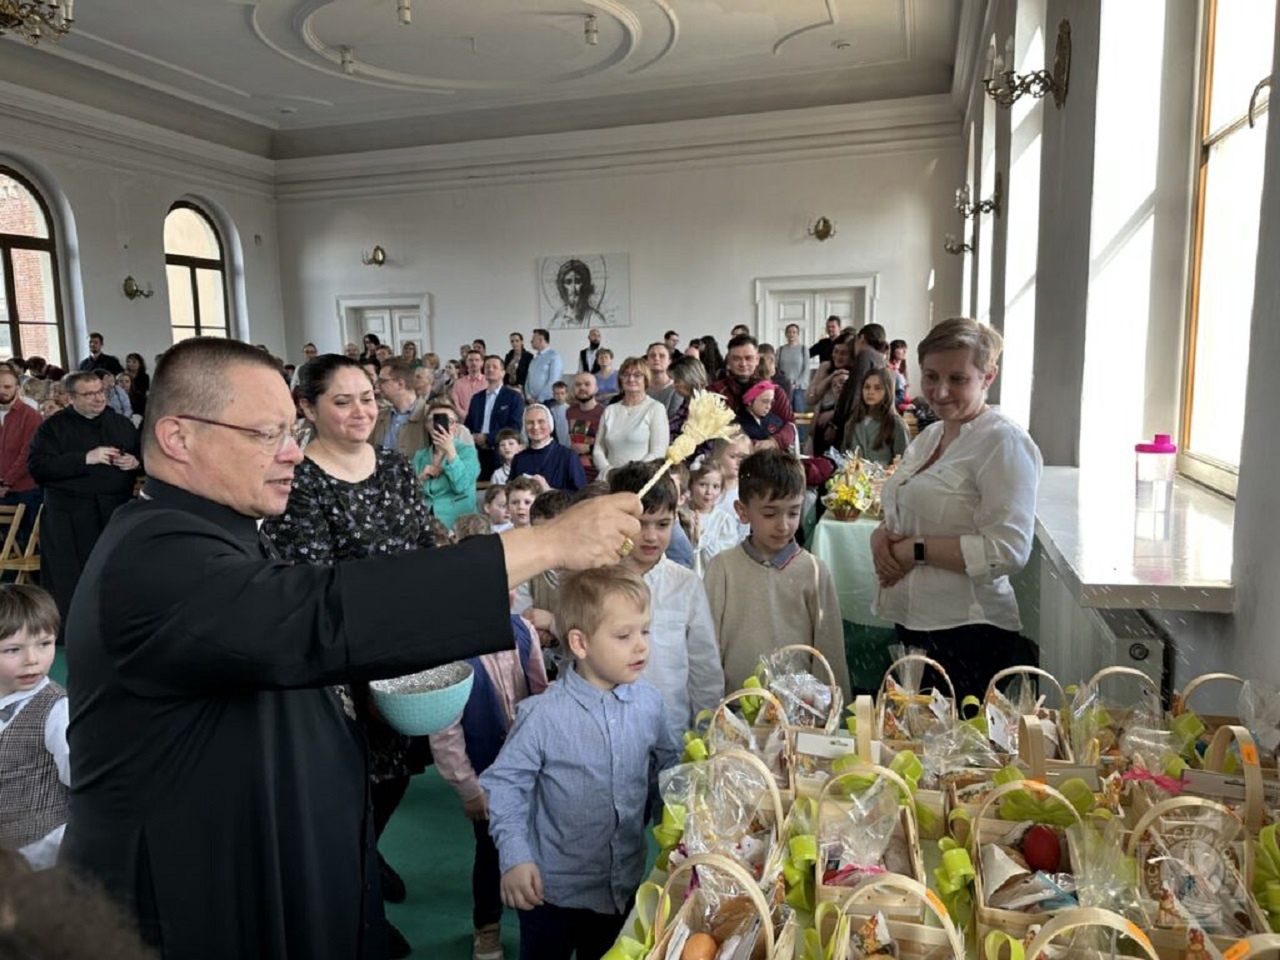 Kardynał odwiedził przedszkole. Dzieci zaprezentowały wyjątkowe przedstawienie